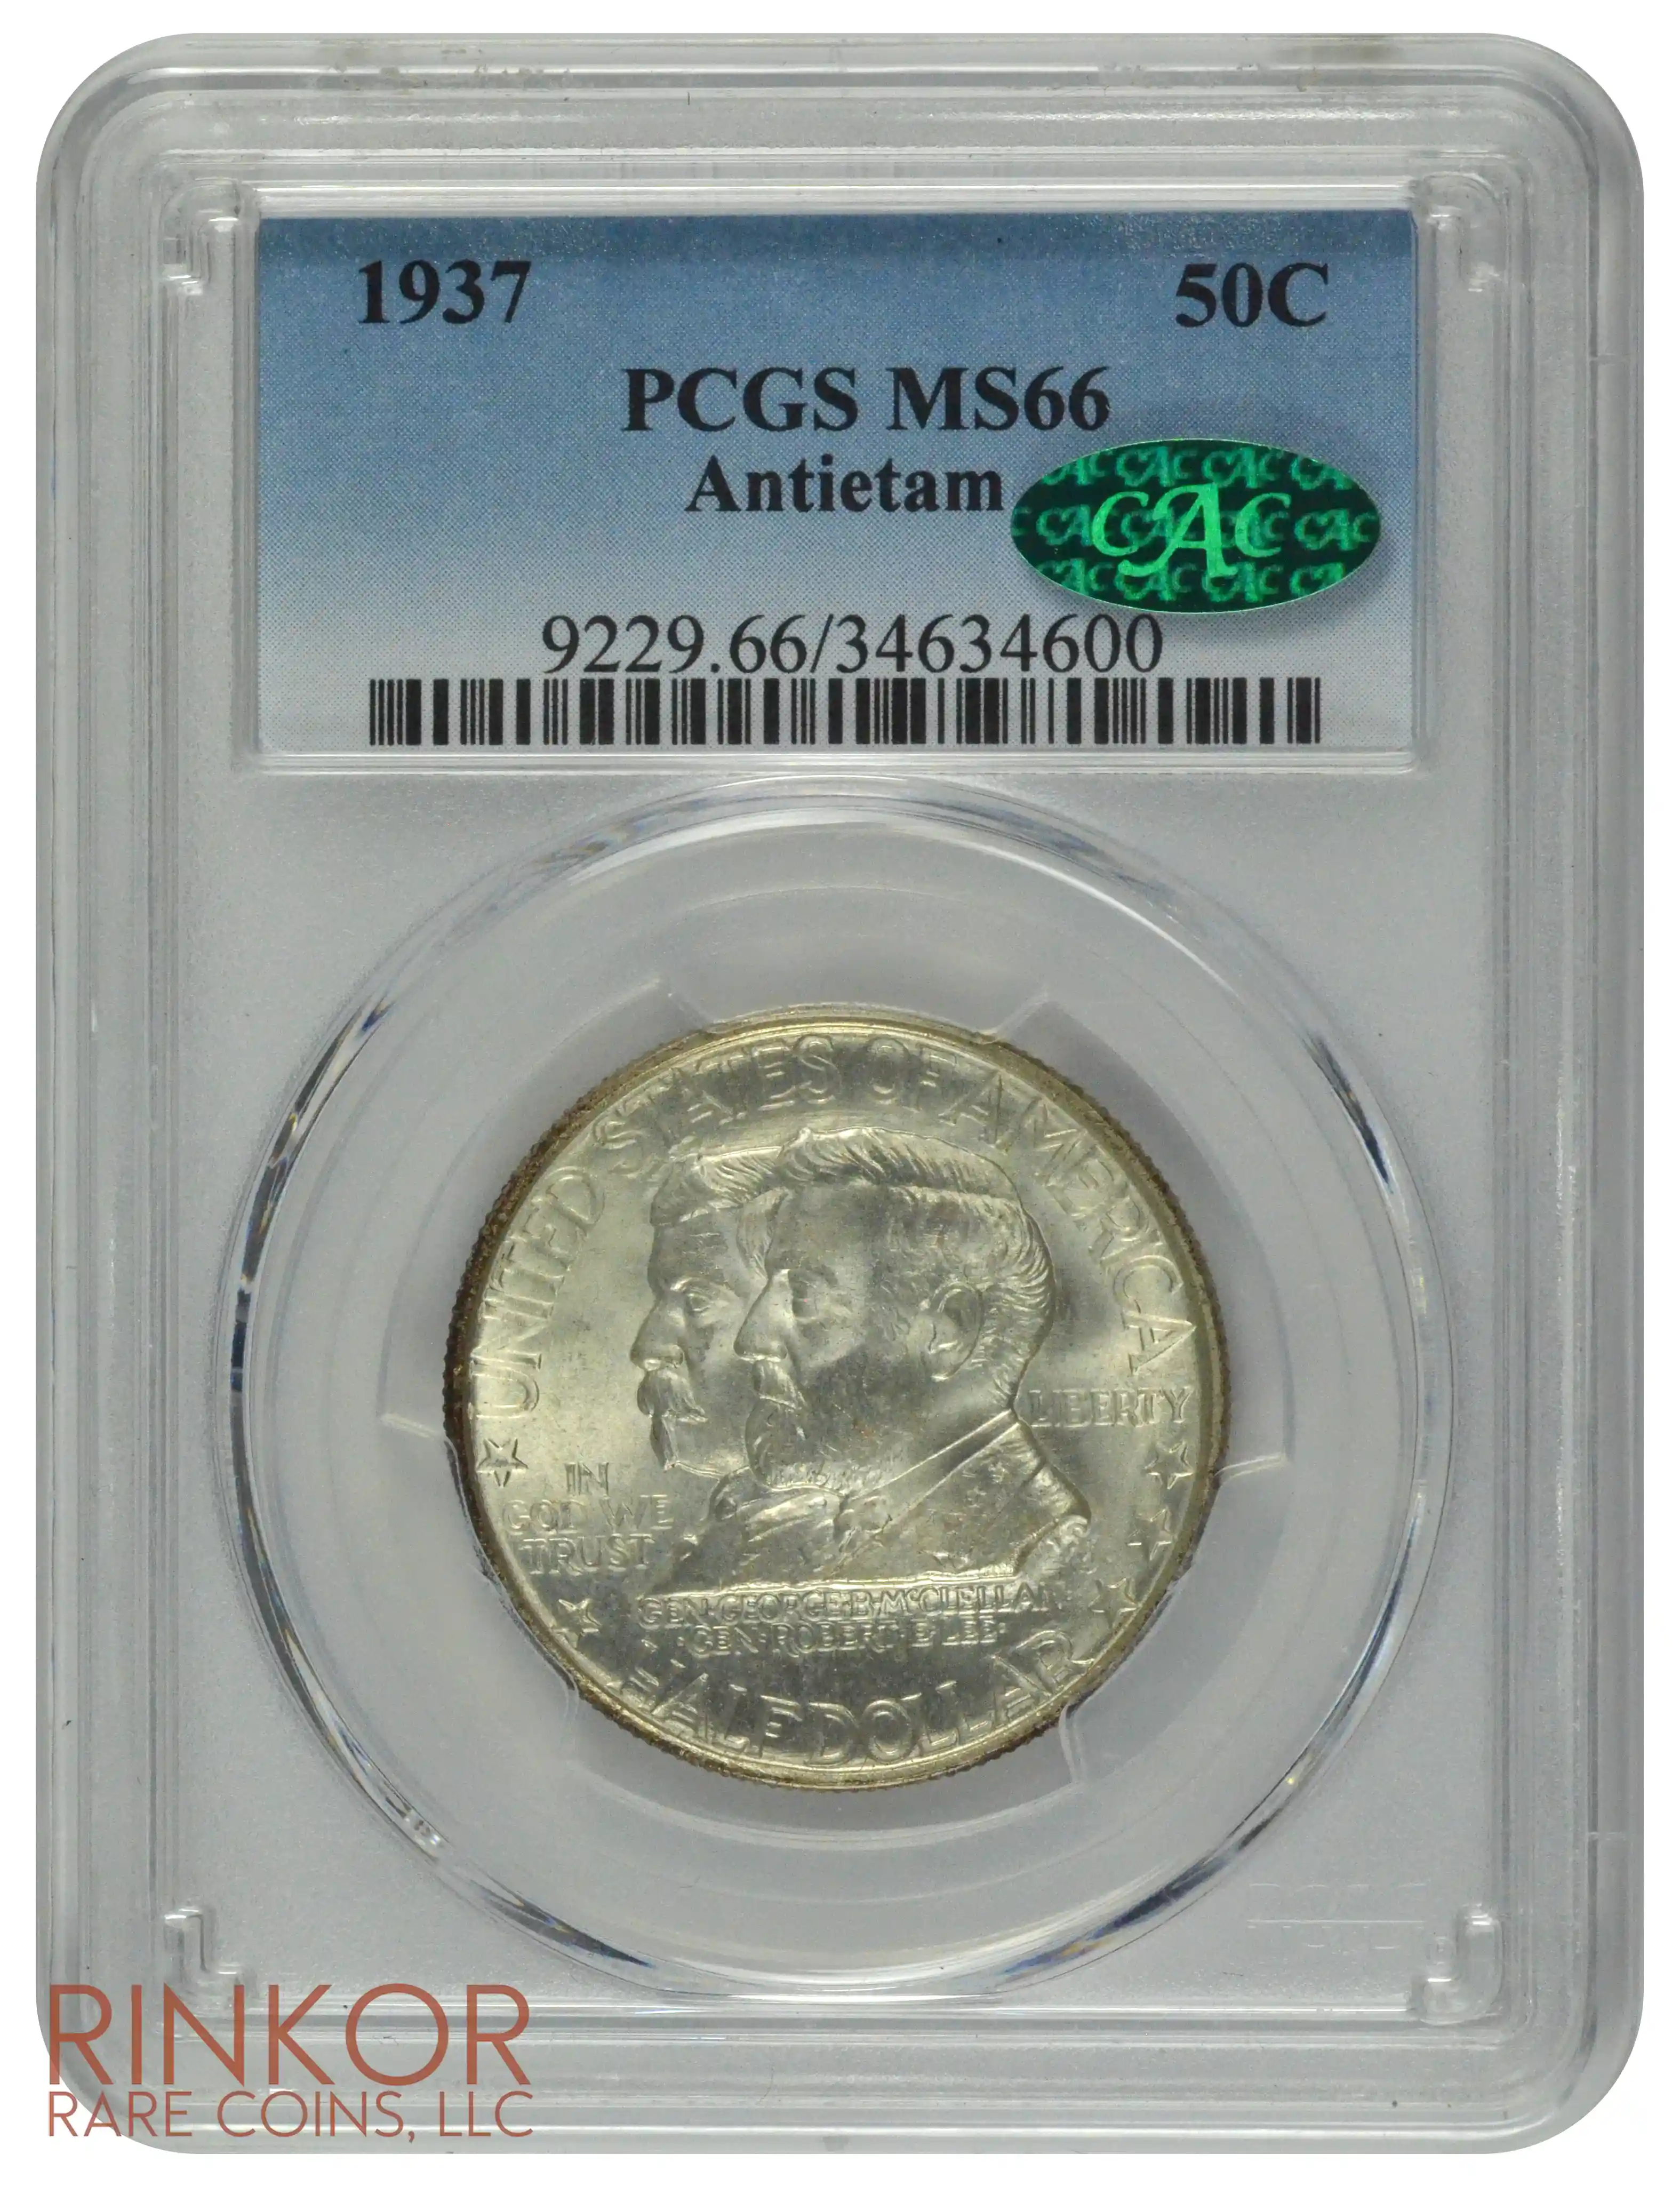 1937 Antietam Commemorative Half Dollar PCGS MS 66 CAC